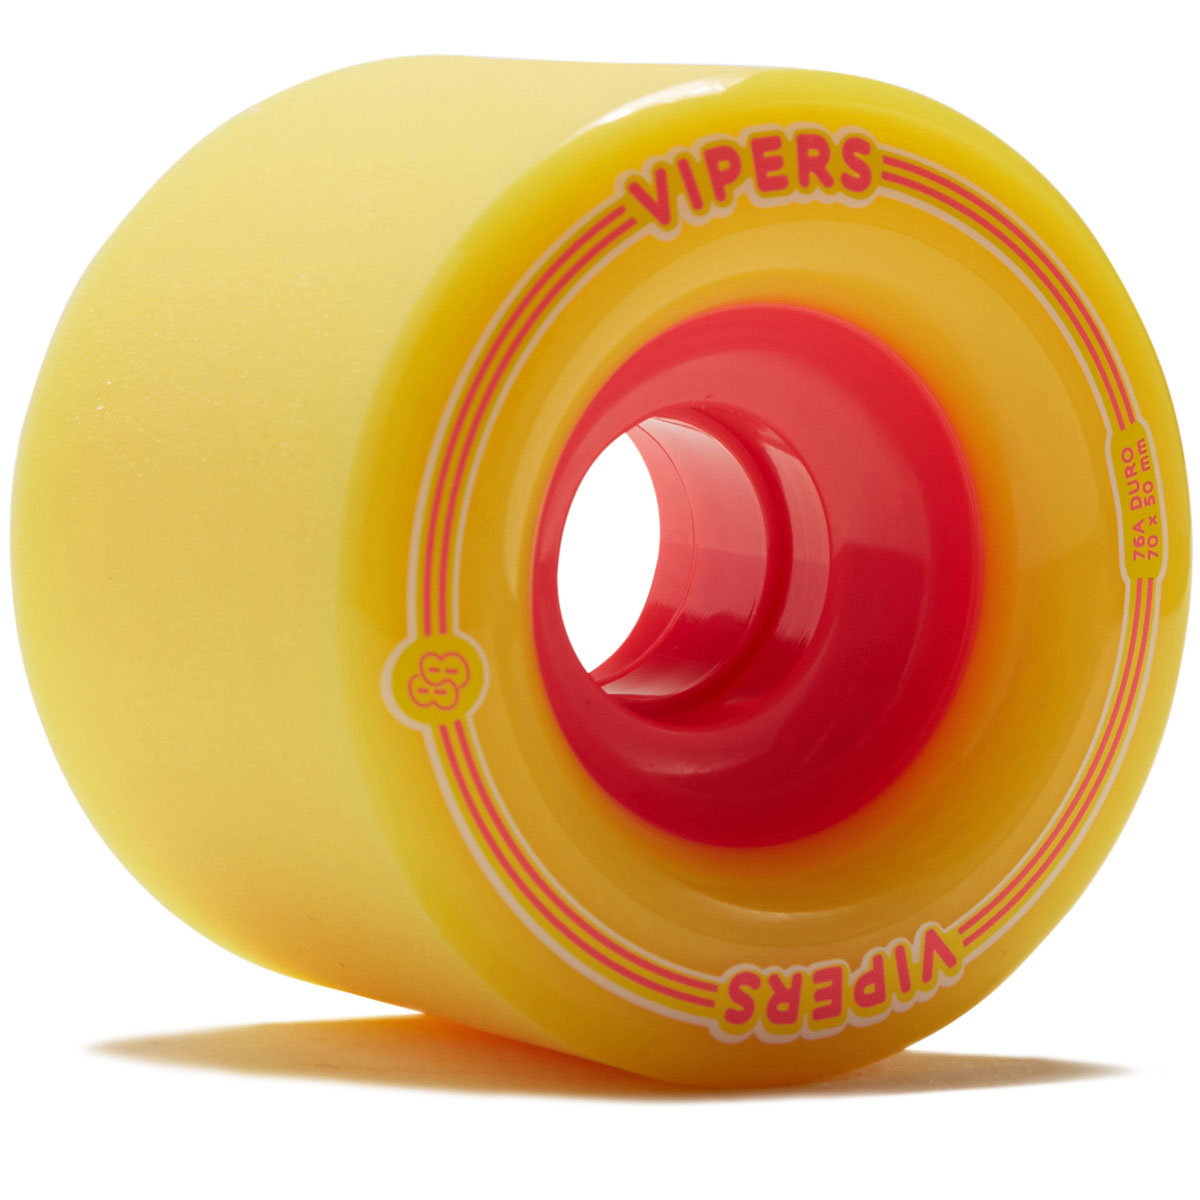 88 Wheel Co Viper Freeride 76a Longboard Wheels - Yellow - 70mm image 1